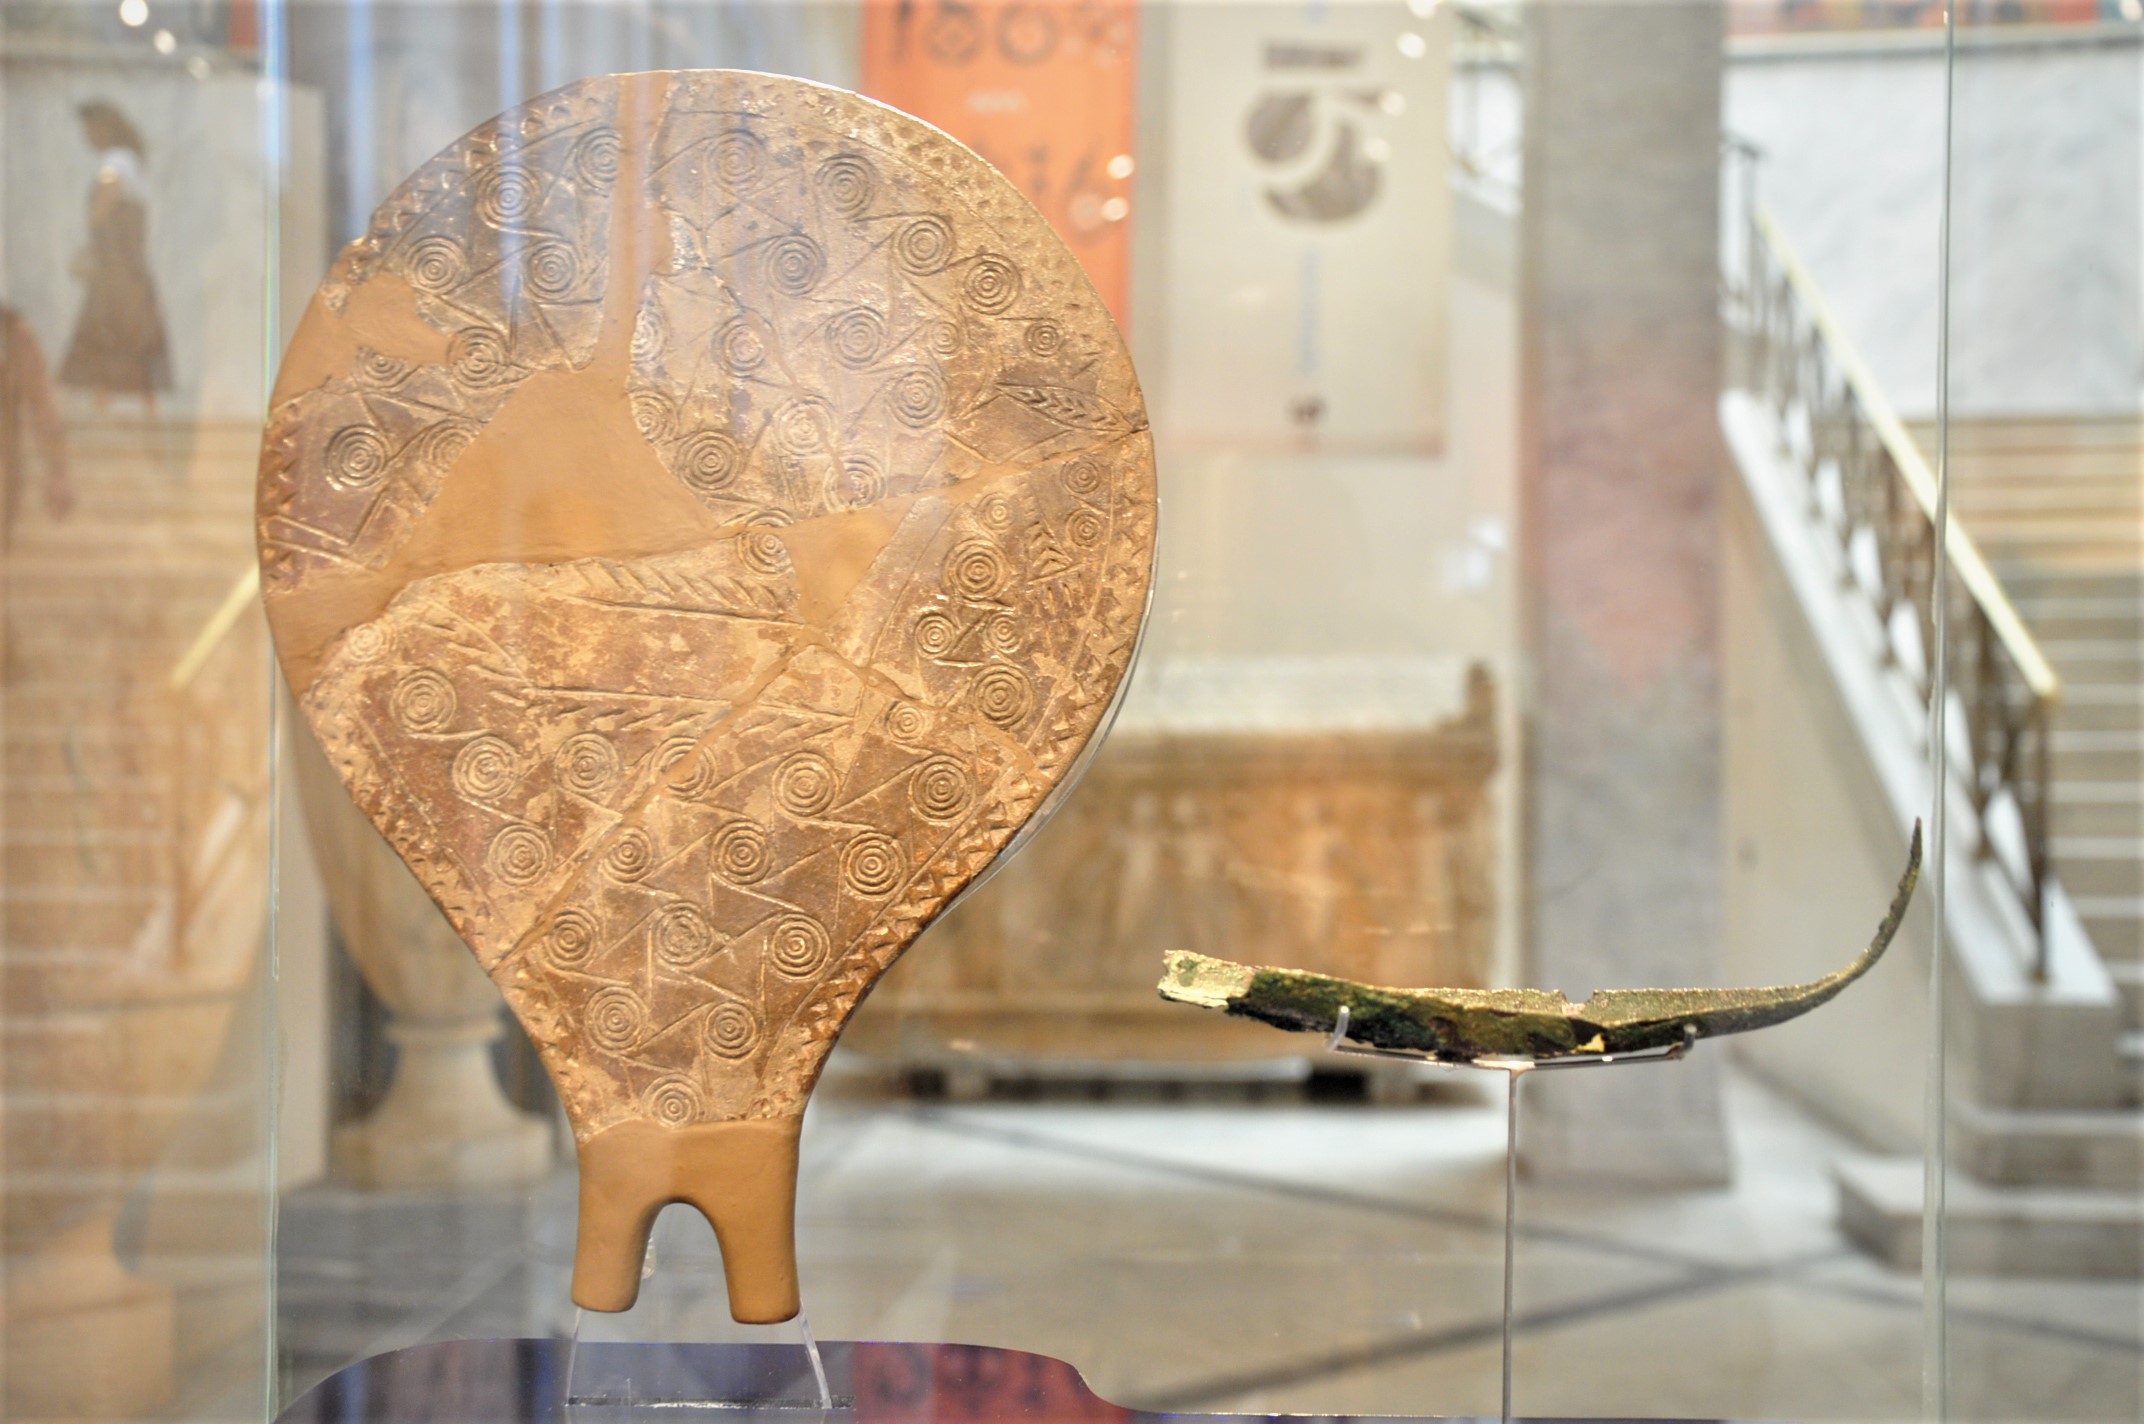 “Δύο πανάρχαια ταξίδια στο Αιγαίο” υποδέχεται το Αθέατο Μουσείο του Εθνικού Αρχαιολογικού Μουσείου